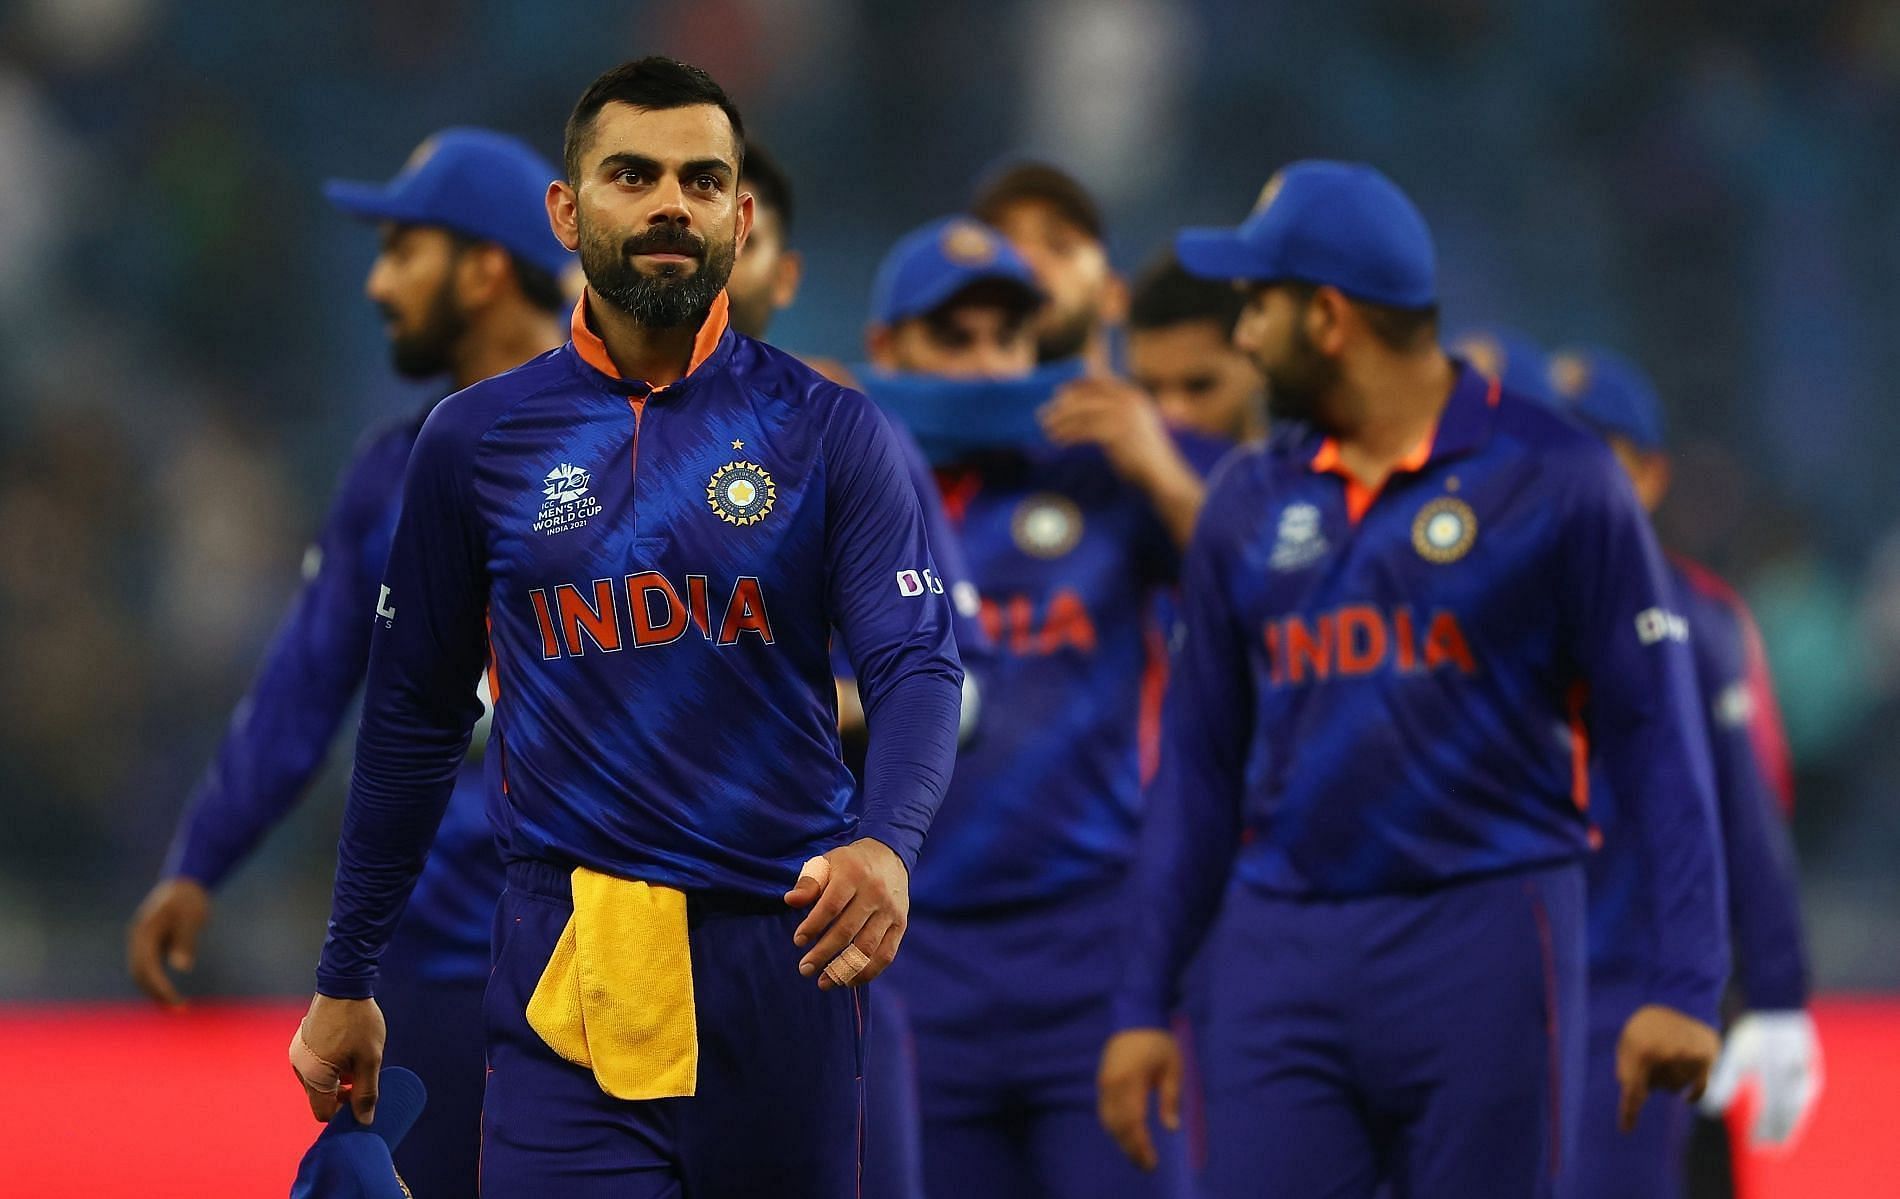 भारतीय टीम को पाकिस्तान के खिलाफ करारी हार झेलनी पड़ी